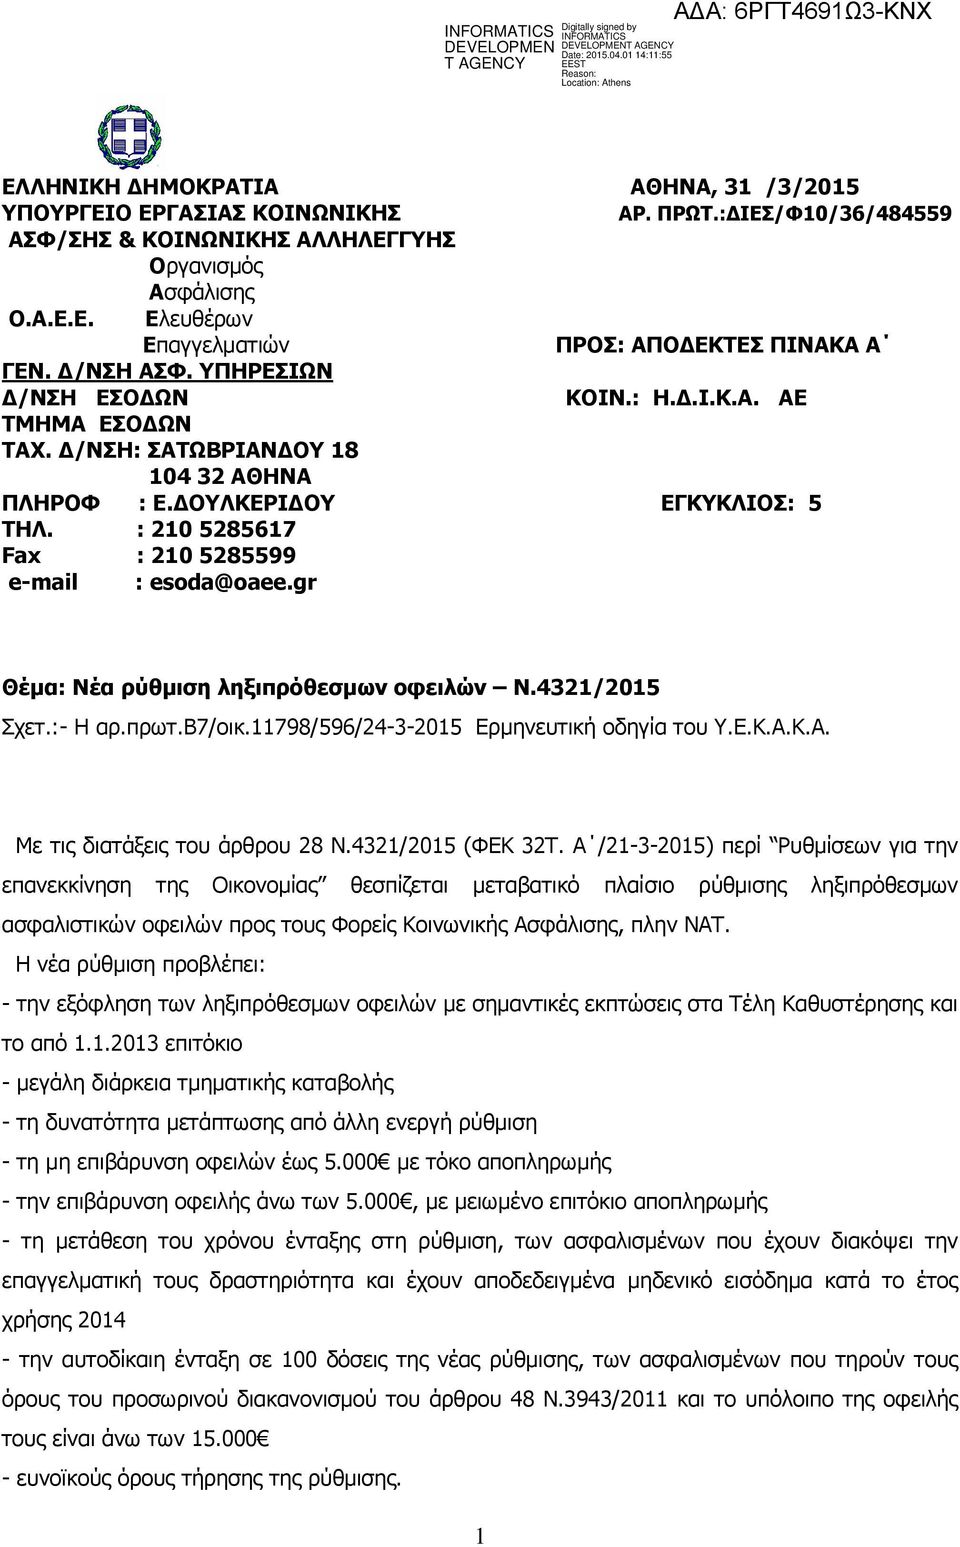 : 210 5285617 Fax : 210 5285599 e-mail : esoda@oaee.gr Θέμα: Νέα ρύθμιση ληξιπρόθεσμων οφειλών Ν.4321/2015 Σχετ.:- Η αρ.πρωτ.β7/οικ.11798/596/24-3-2015 Ερμηνευτική οδηγία του Υ.Ε.Κ.Α.